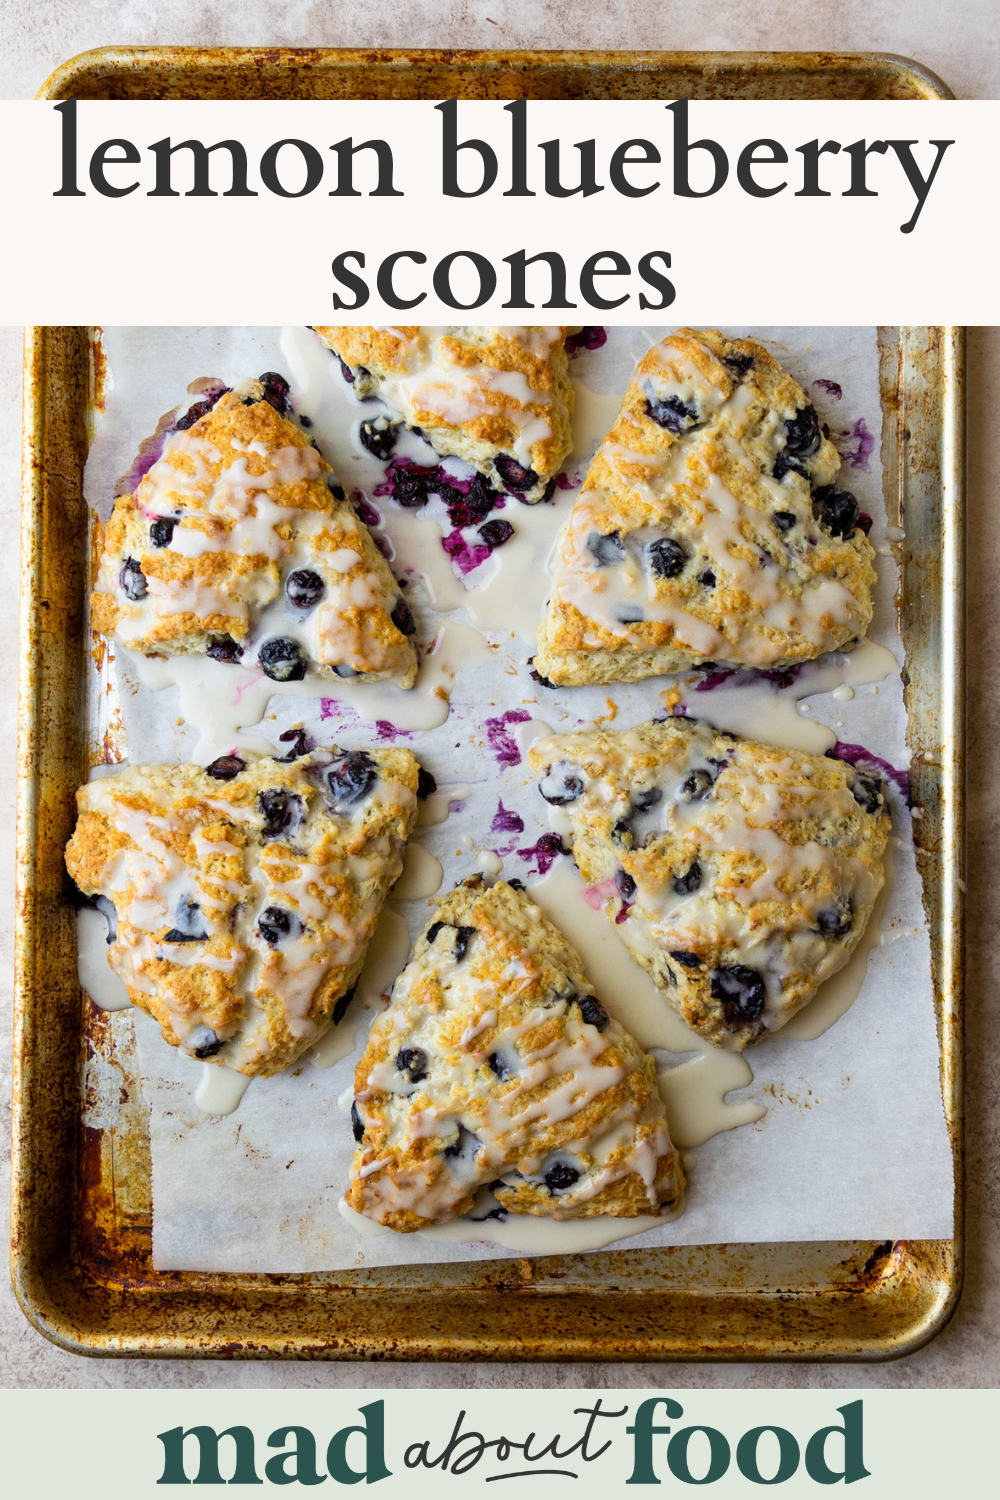 Image for pinning Lemon Blueberry Scone recipe on Pinterest